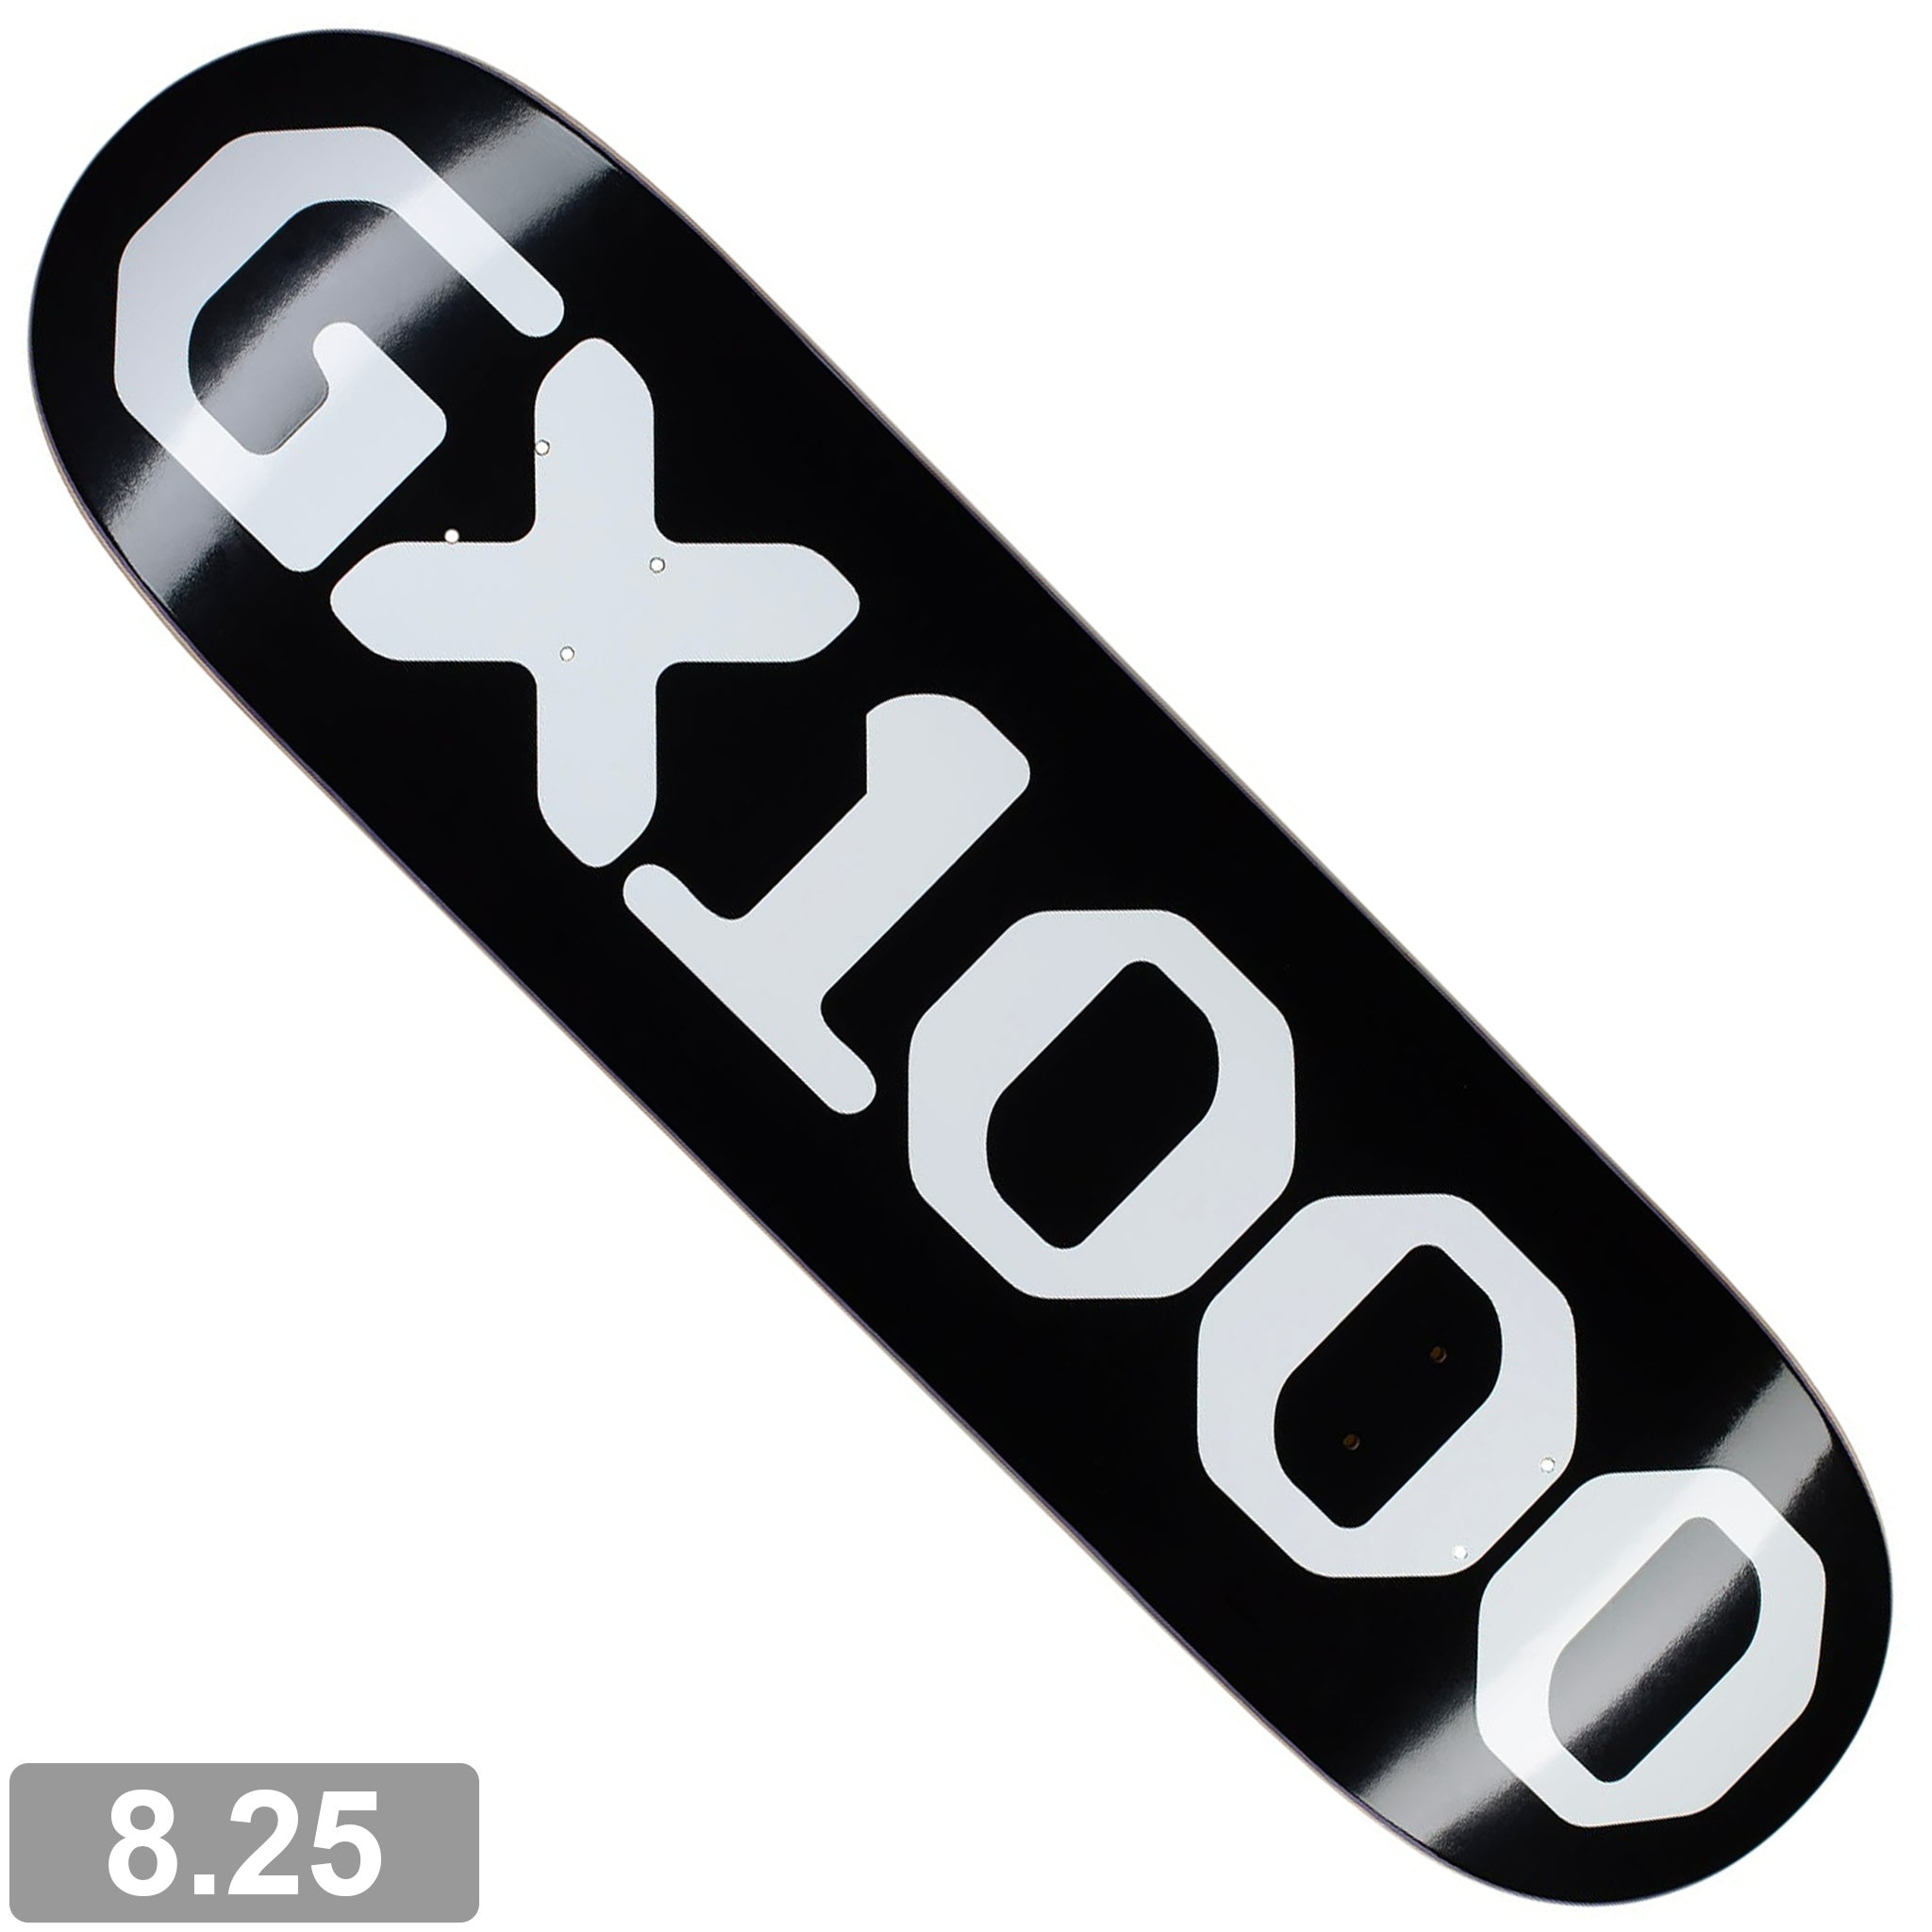 GX1000 OG LOGO BLACK / WHITE FONT DECK 8.25 【 ジーエックス1000 OG ロゴ ブラック / ホワイト  フォント デッキ 】